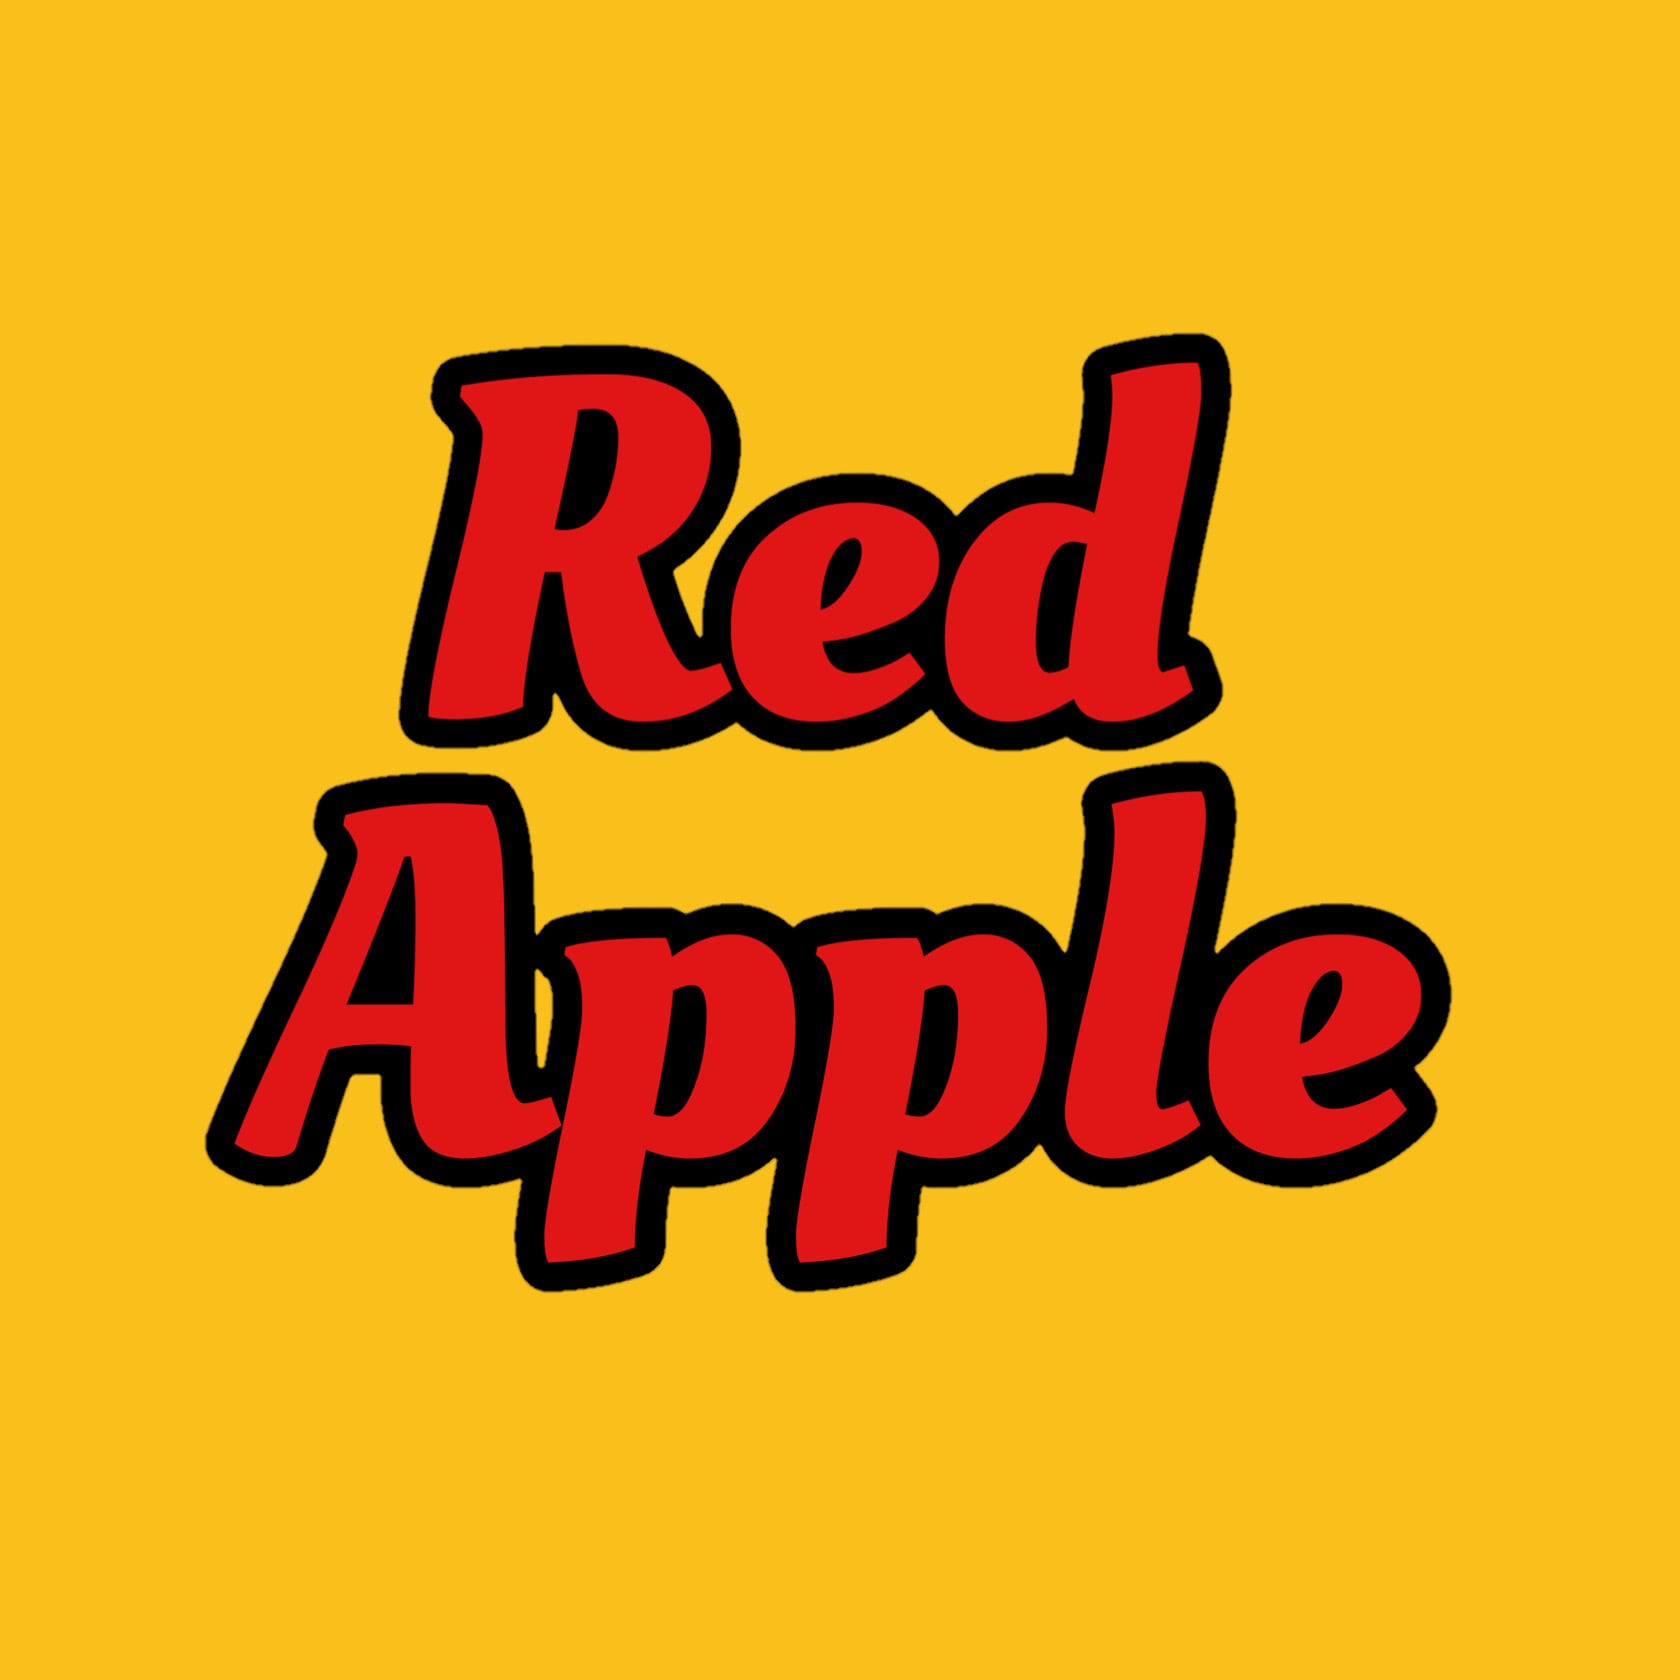 古着屋 Red apple 